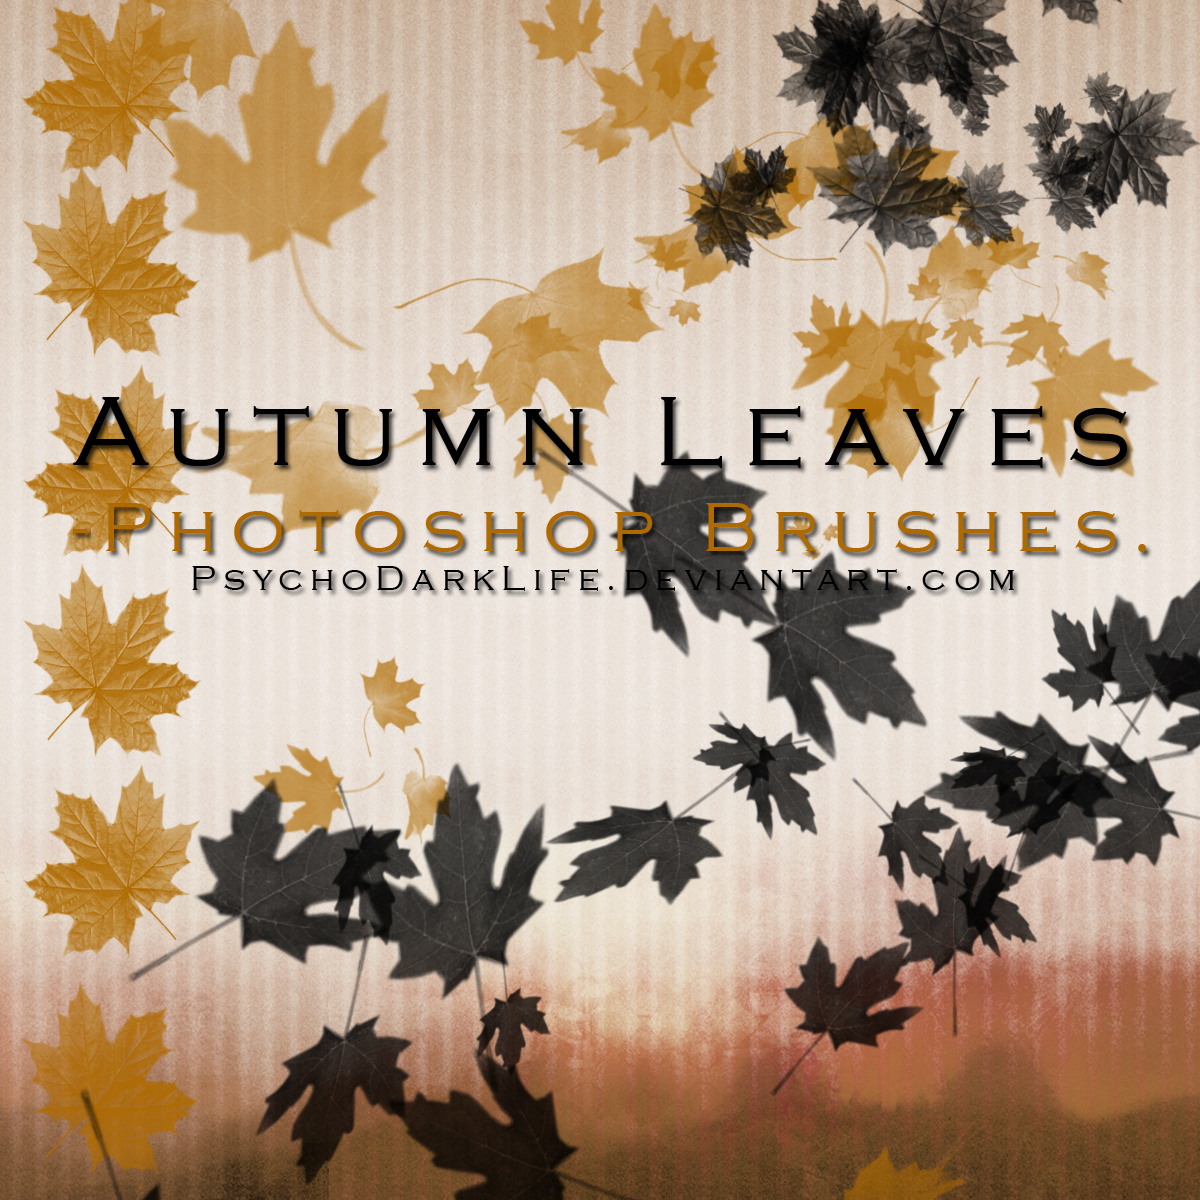 Autumn Leaves Photoshop Brushes